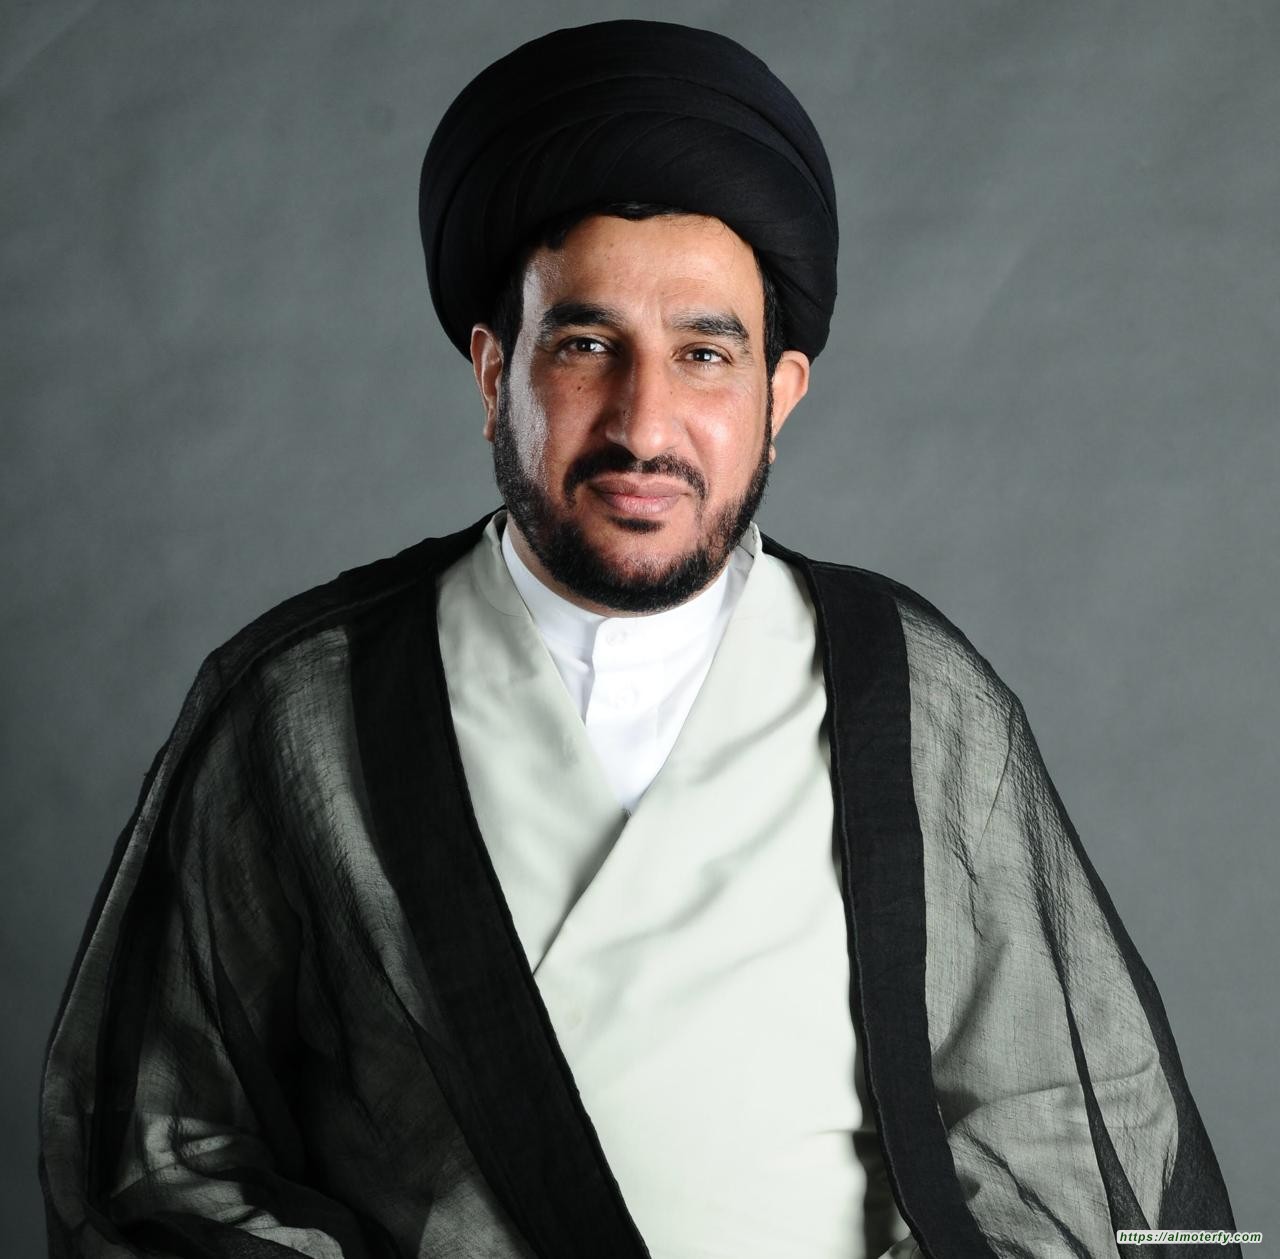 مسارات في تجديد الخطاب الديني لسماحة اية الله السيد محمد رضا السلمان "ابو عدنان "